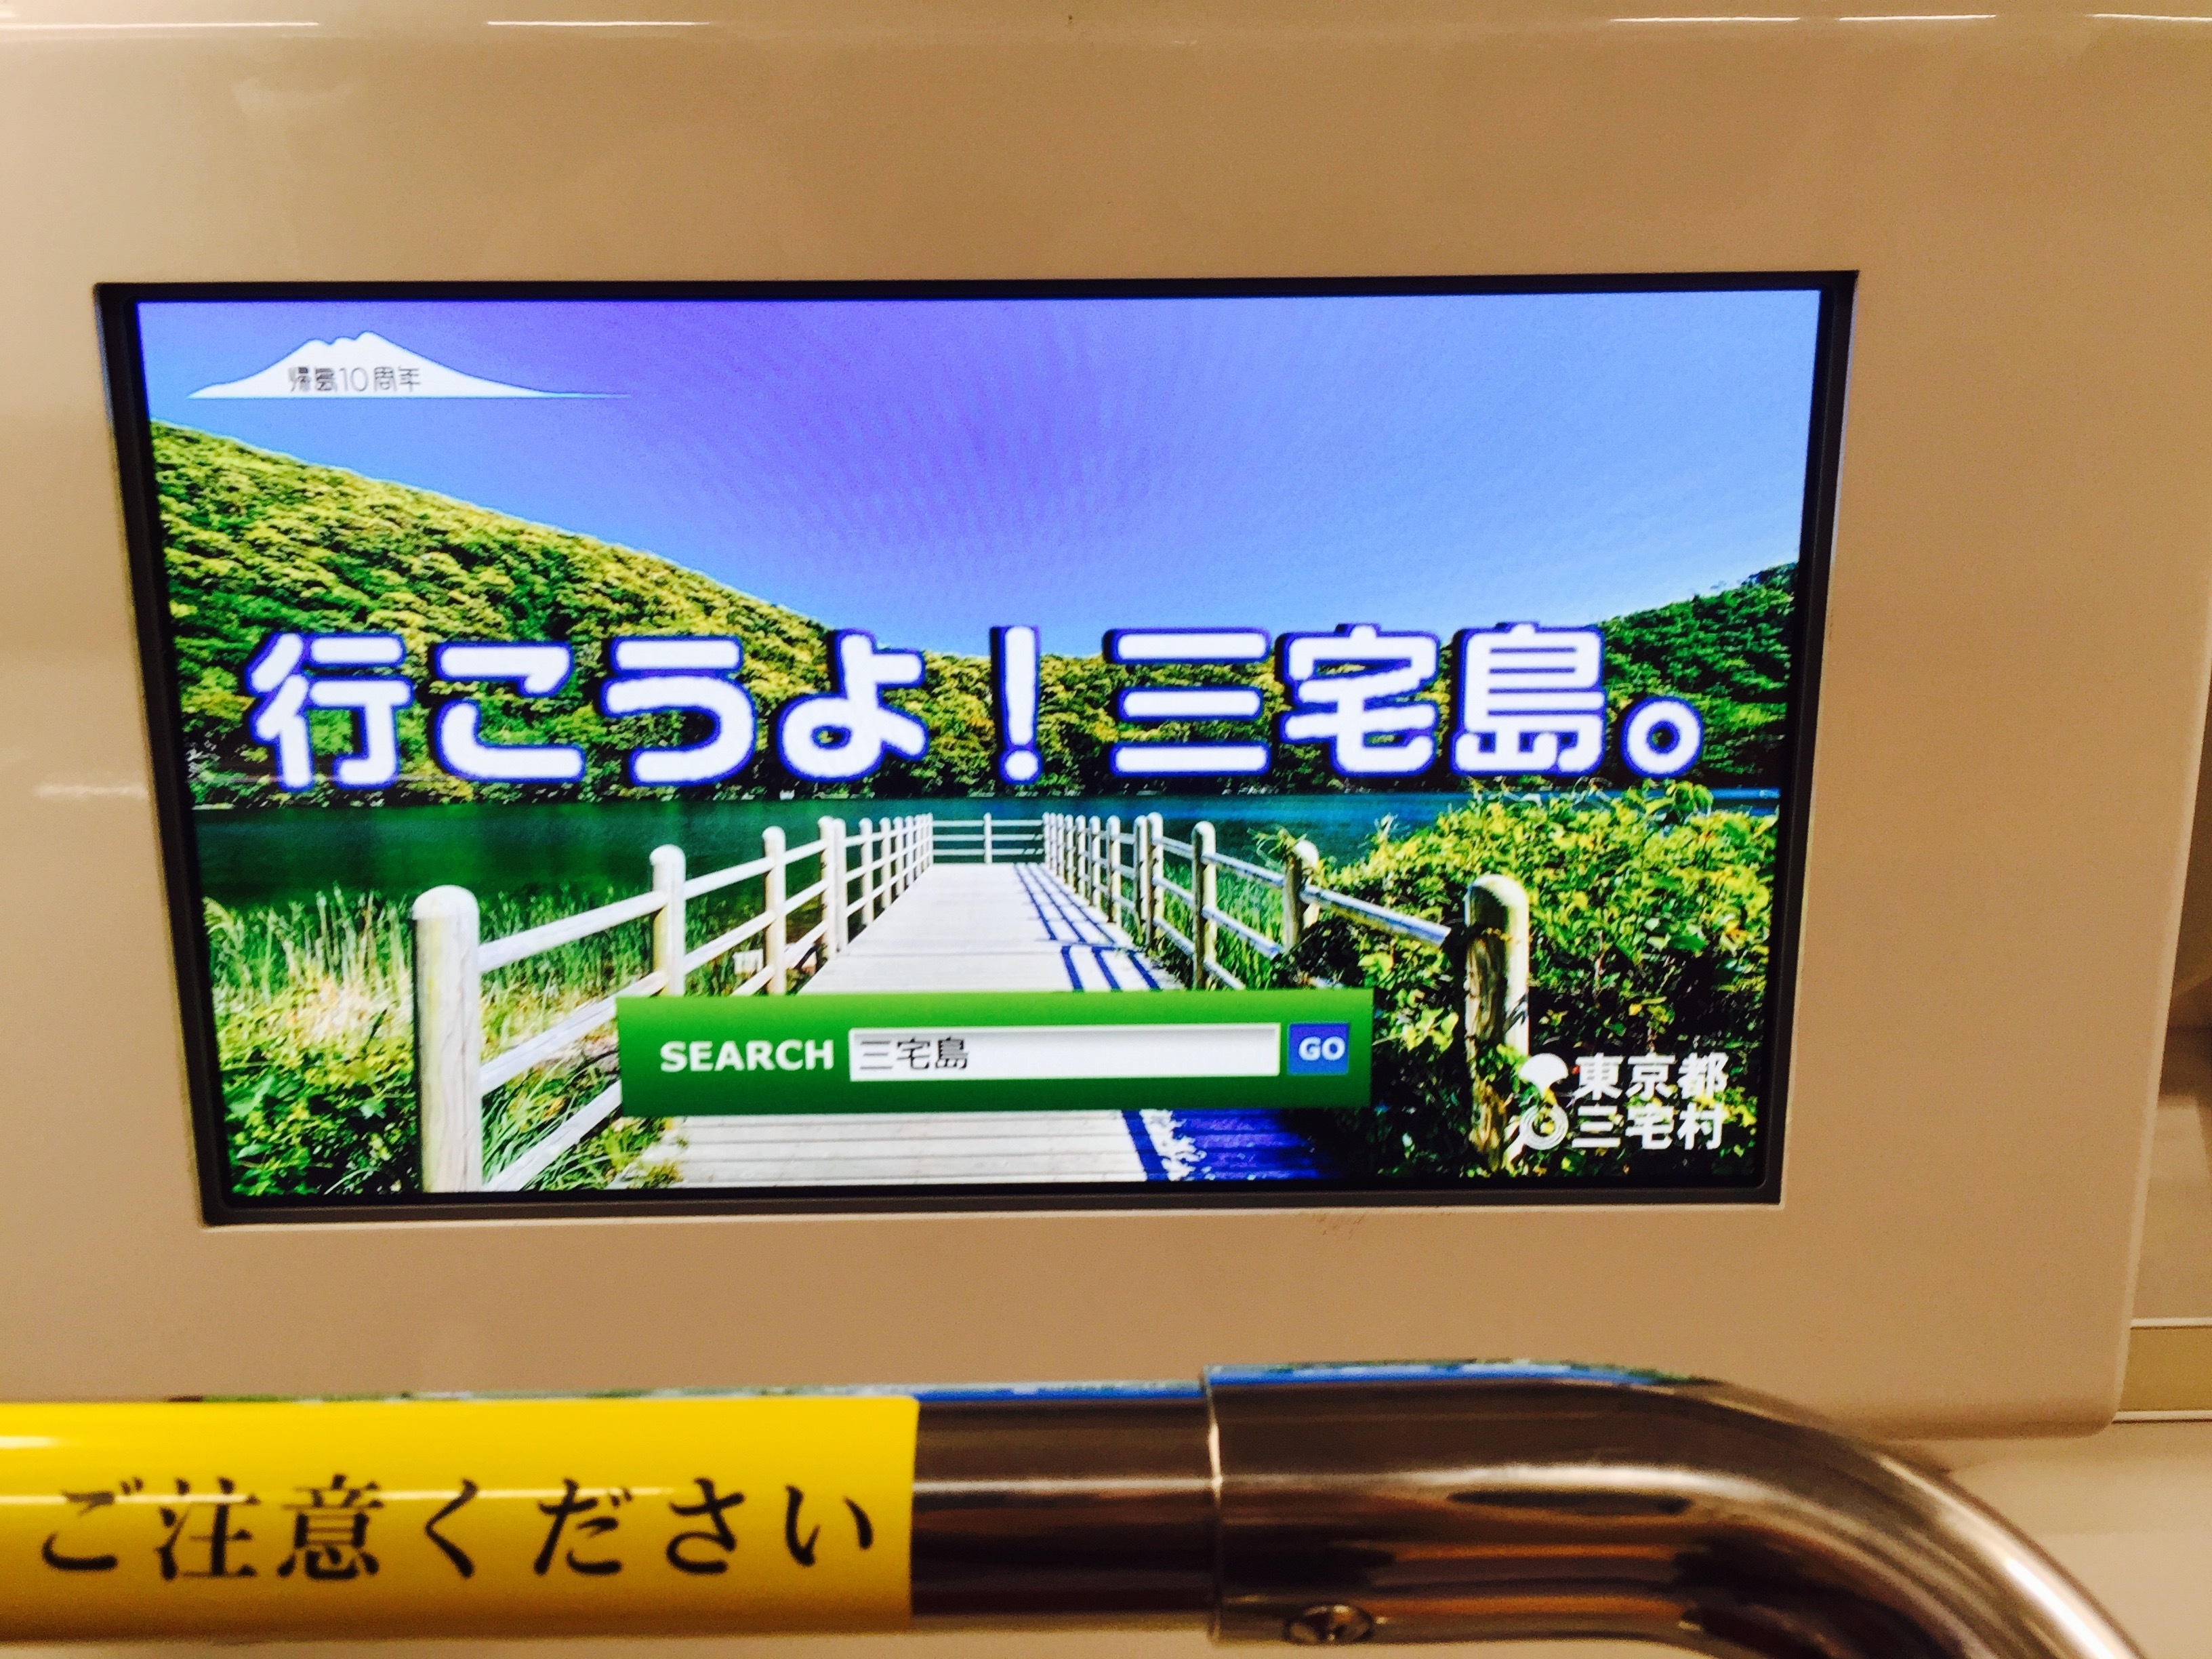 都営地下鉄車内モニターにおける動画放映 画像